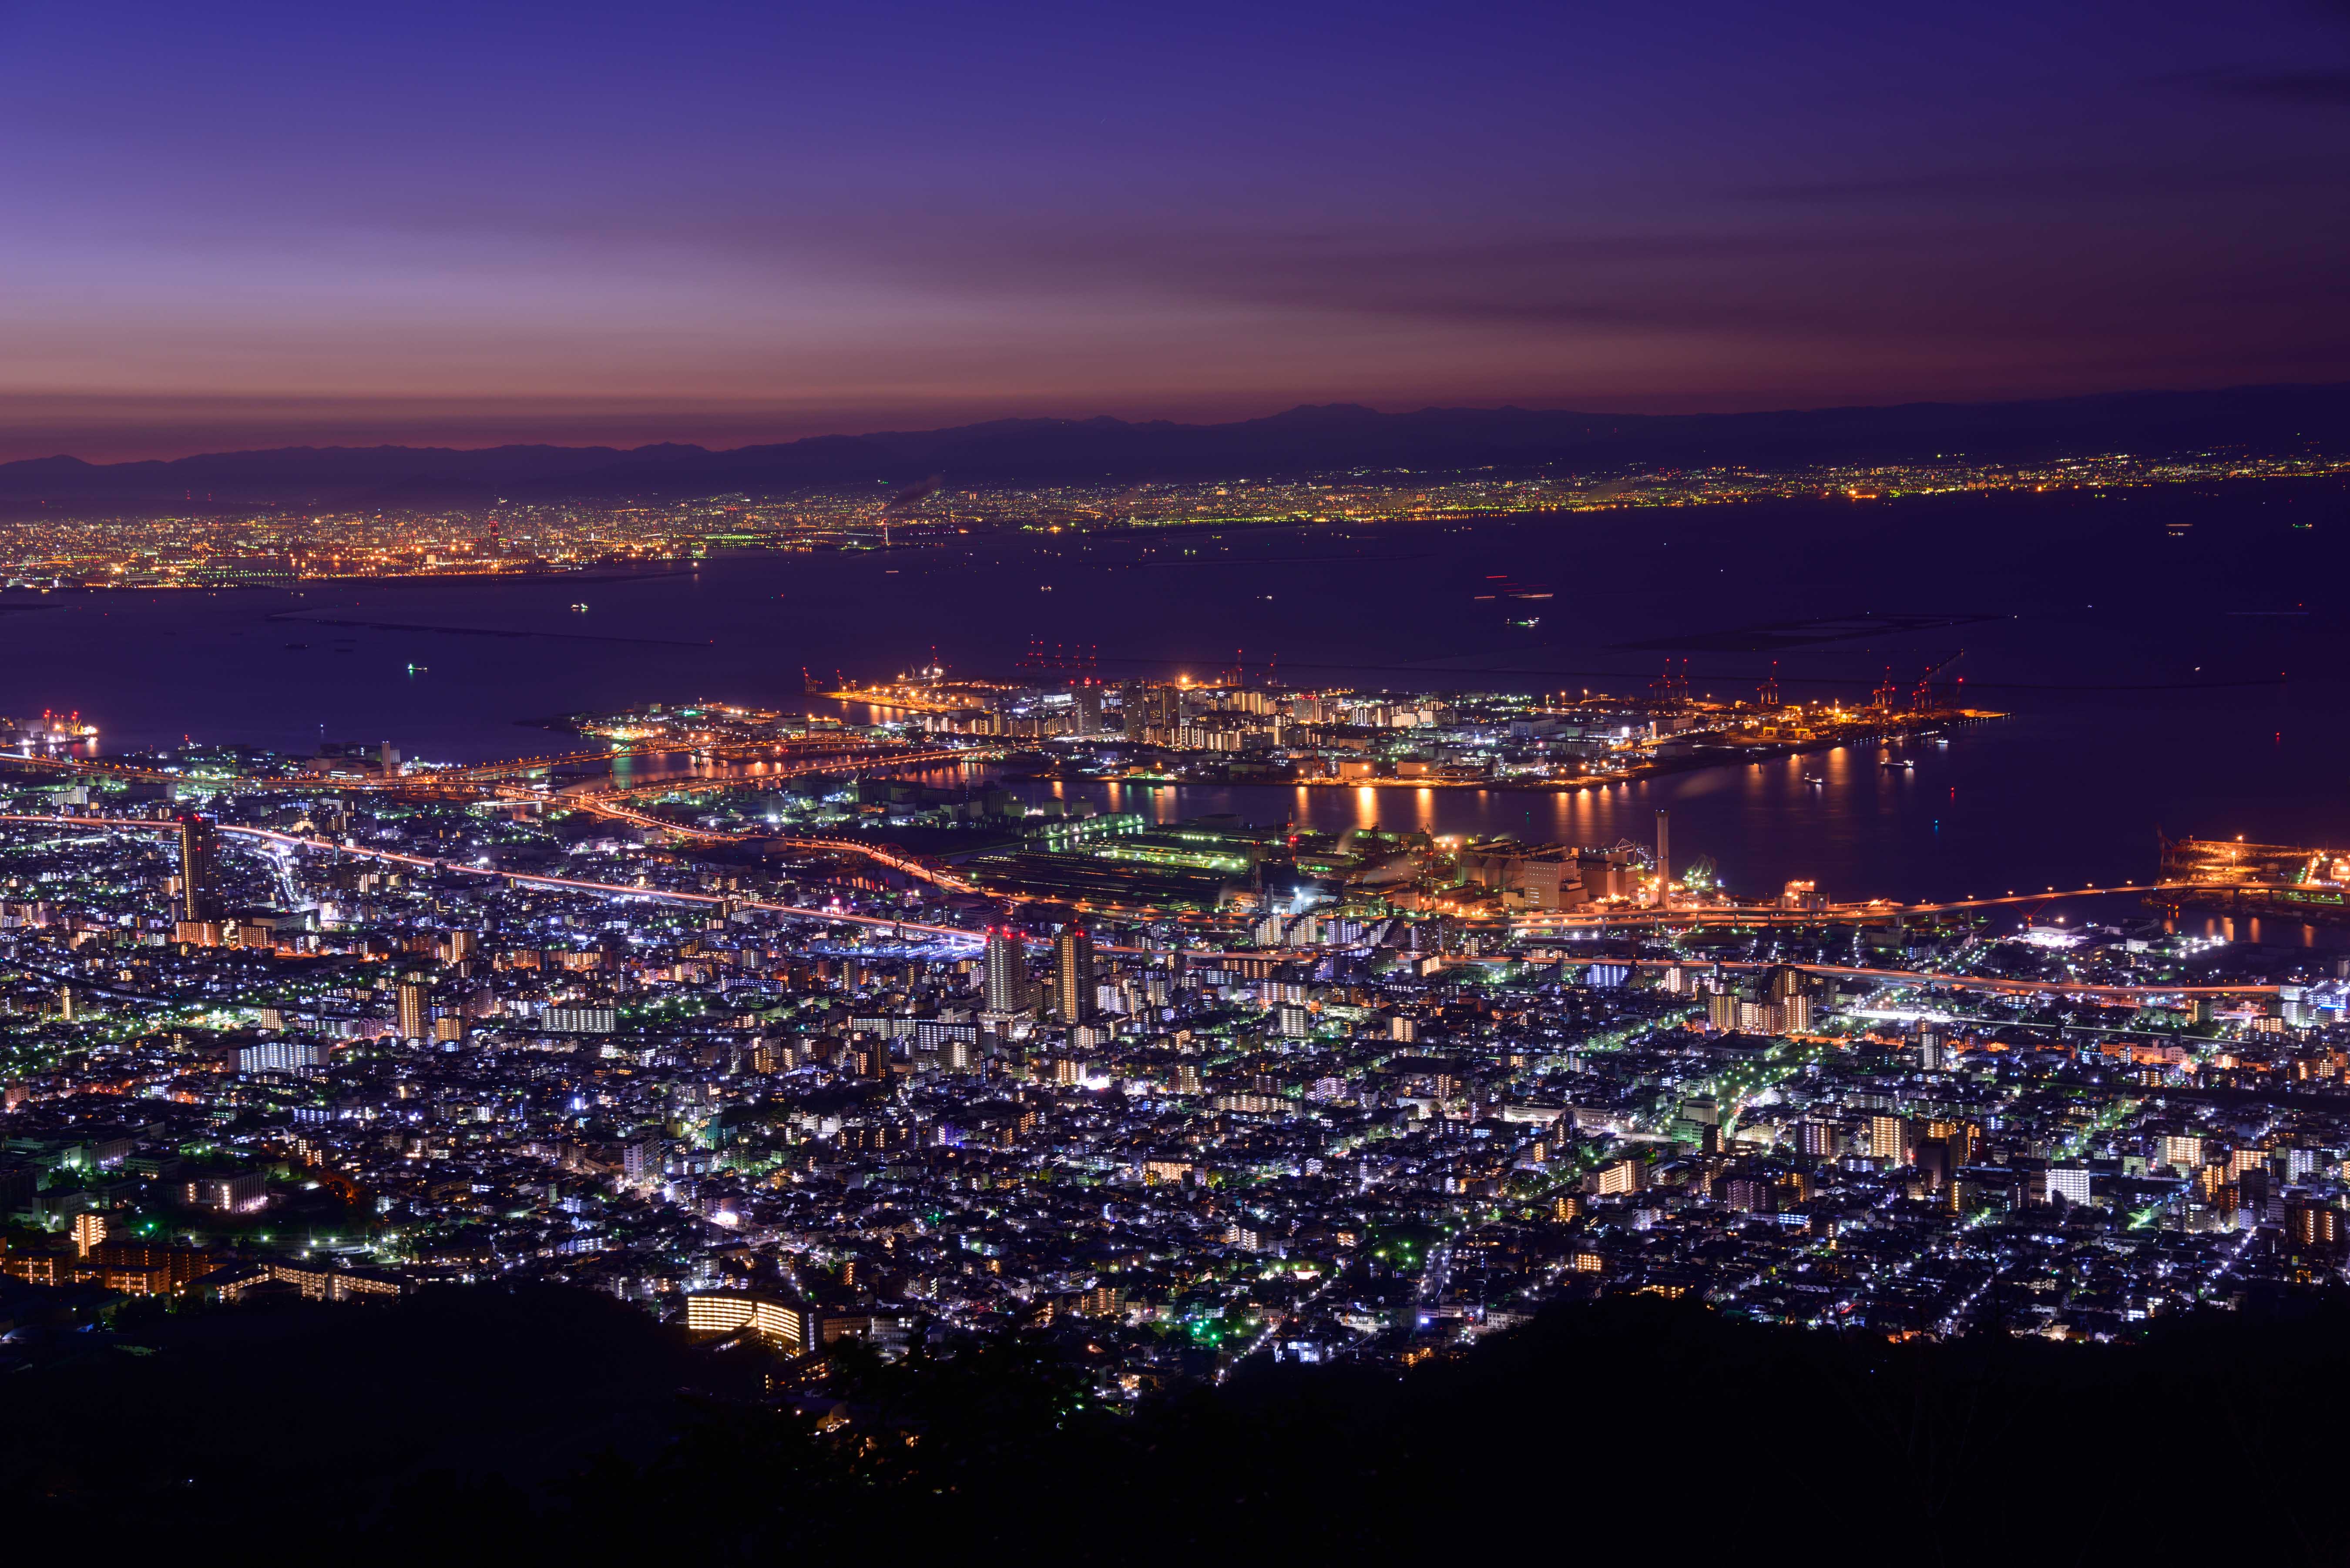 夜幕低垂時， 在六甲山頂更可欣賞到燈火璀璨的神戶港和海灣夜景，好不迷人。